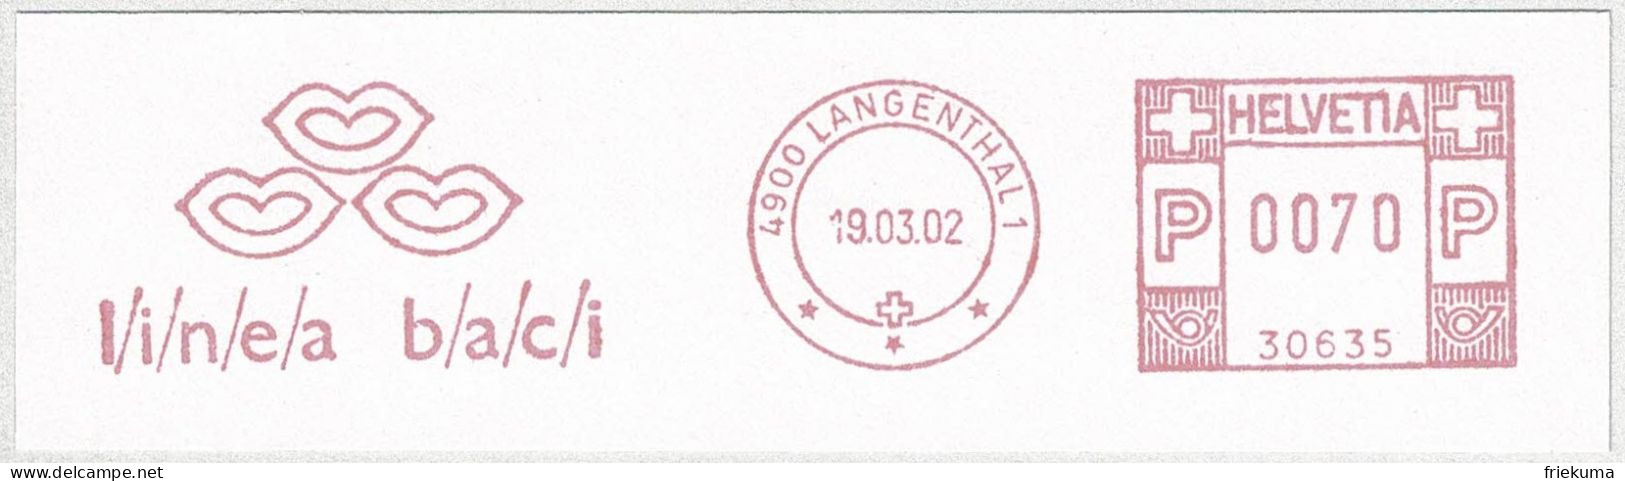 Schweiz / Helvetia 2002, Freistempel / EMA / Meterstamp Peyer + Co Langenthal, Bekleidung, Schuhe  - Frankeermachinen